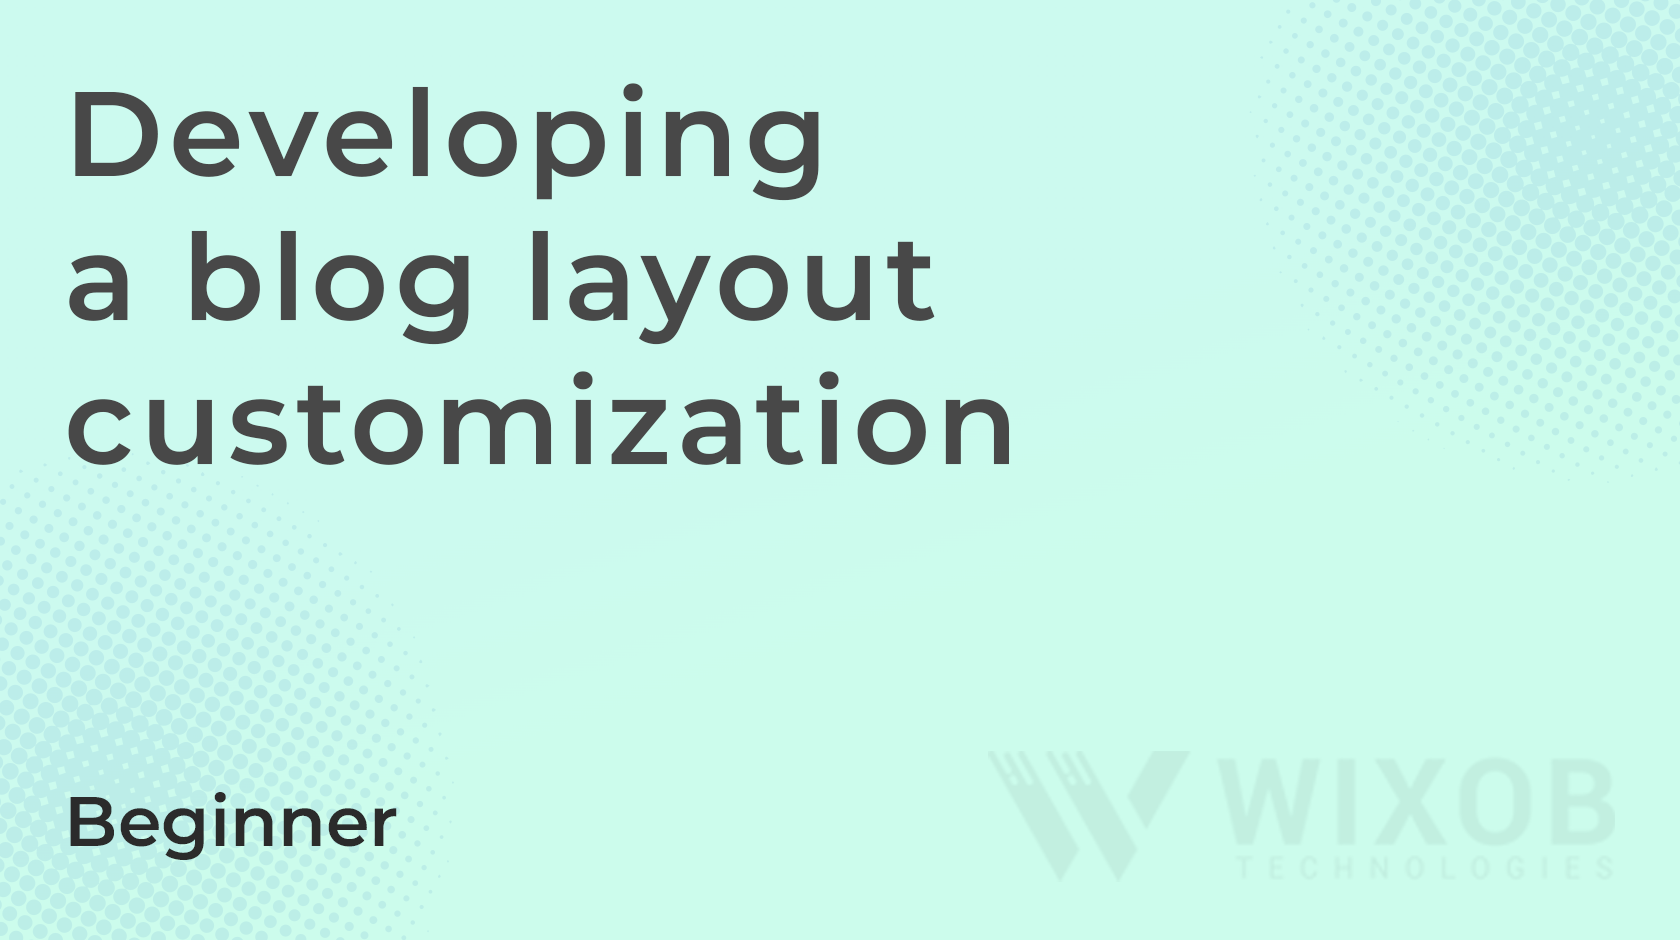 Developing a blog layout customization